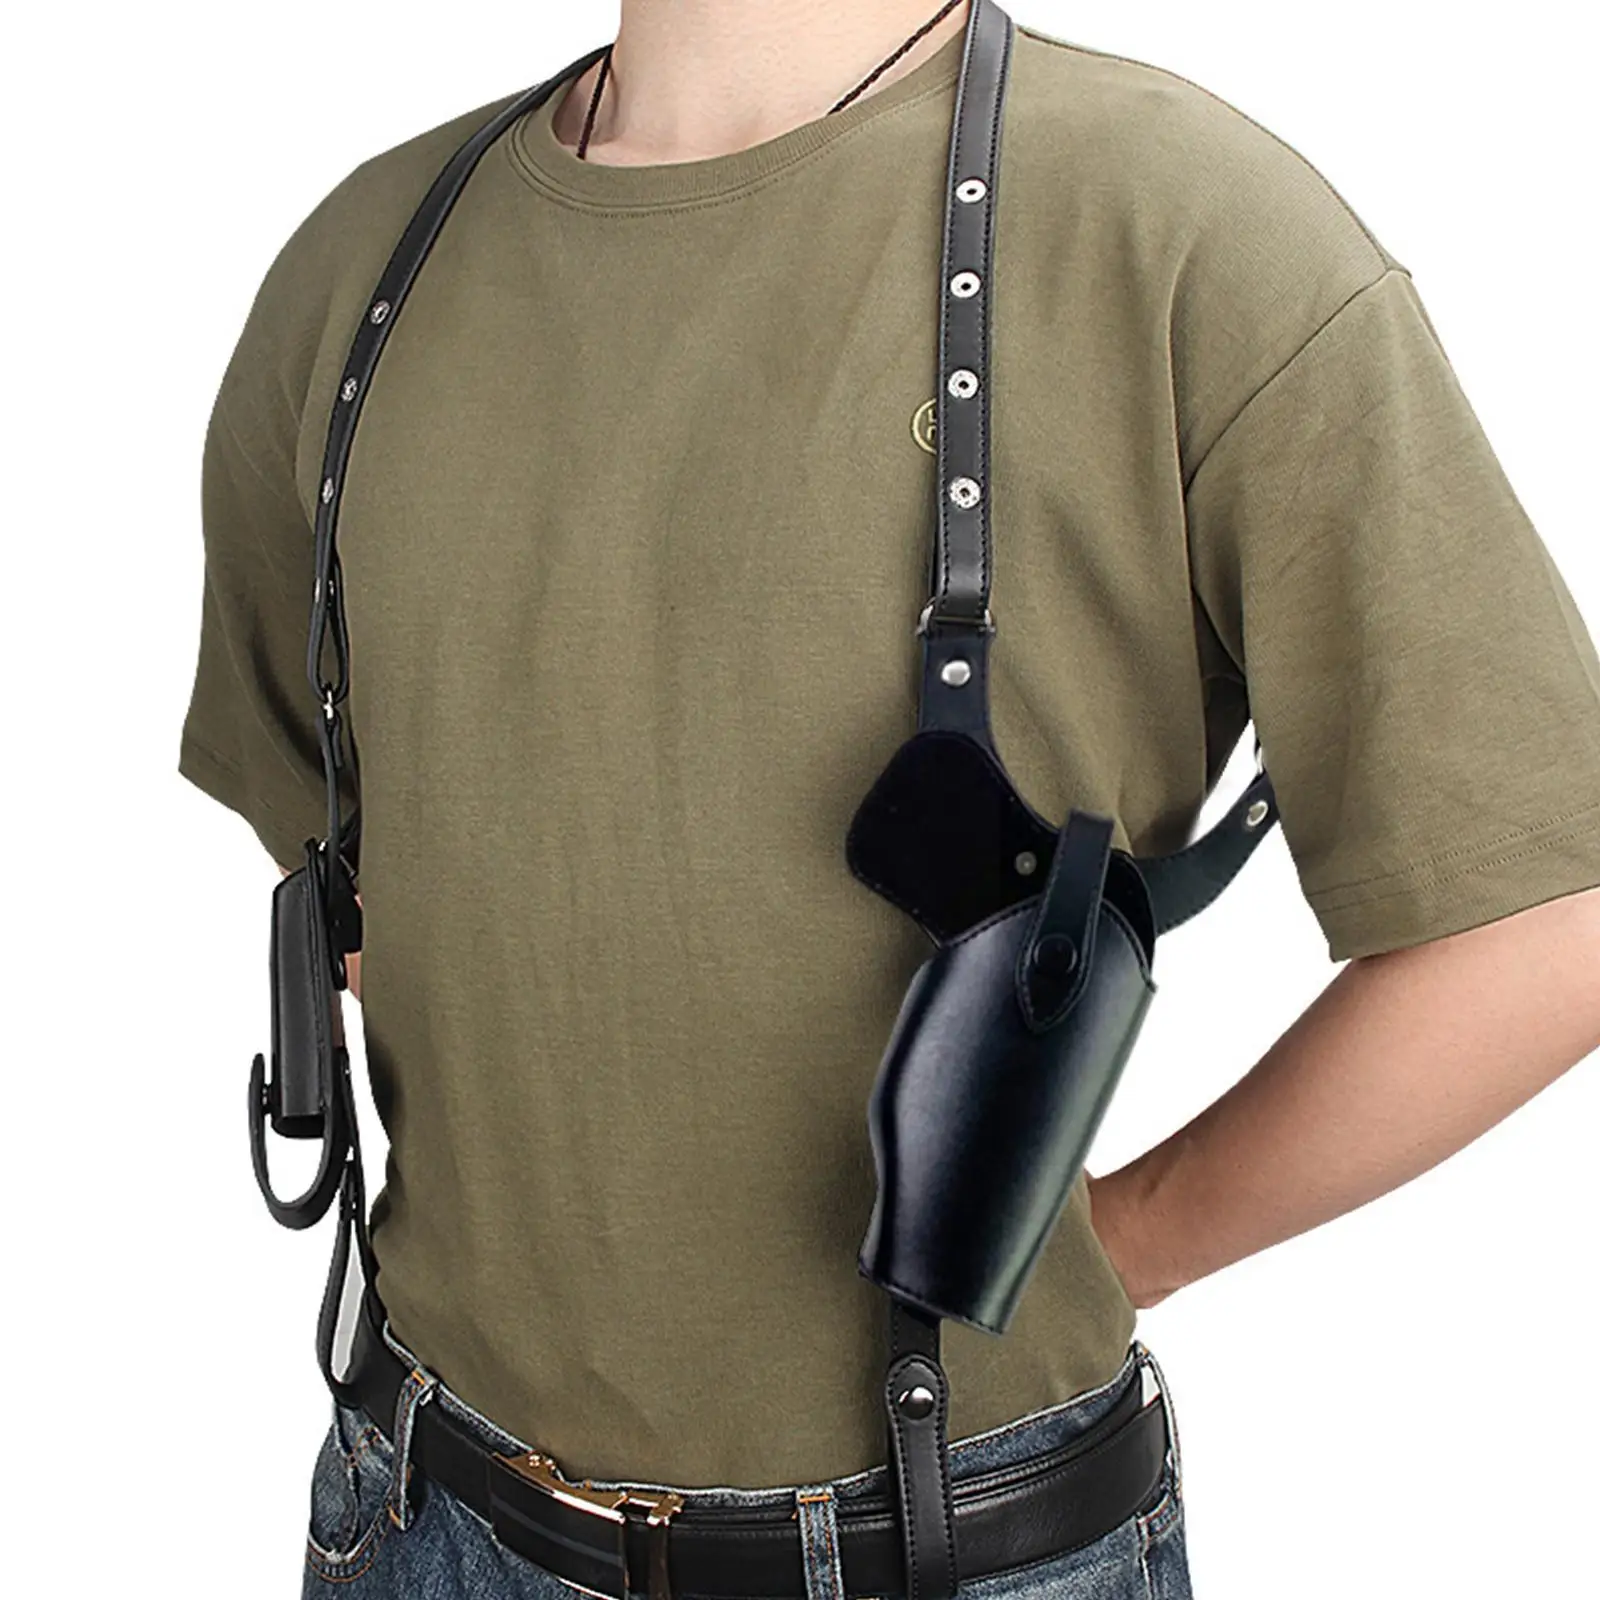 

Тактическая кобура для скрытого пистолета Военная кожаная сумка для подмышек и пистолета Скрытая охотничья сумка на плечо 19 17 кобура для пр...